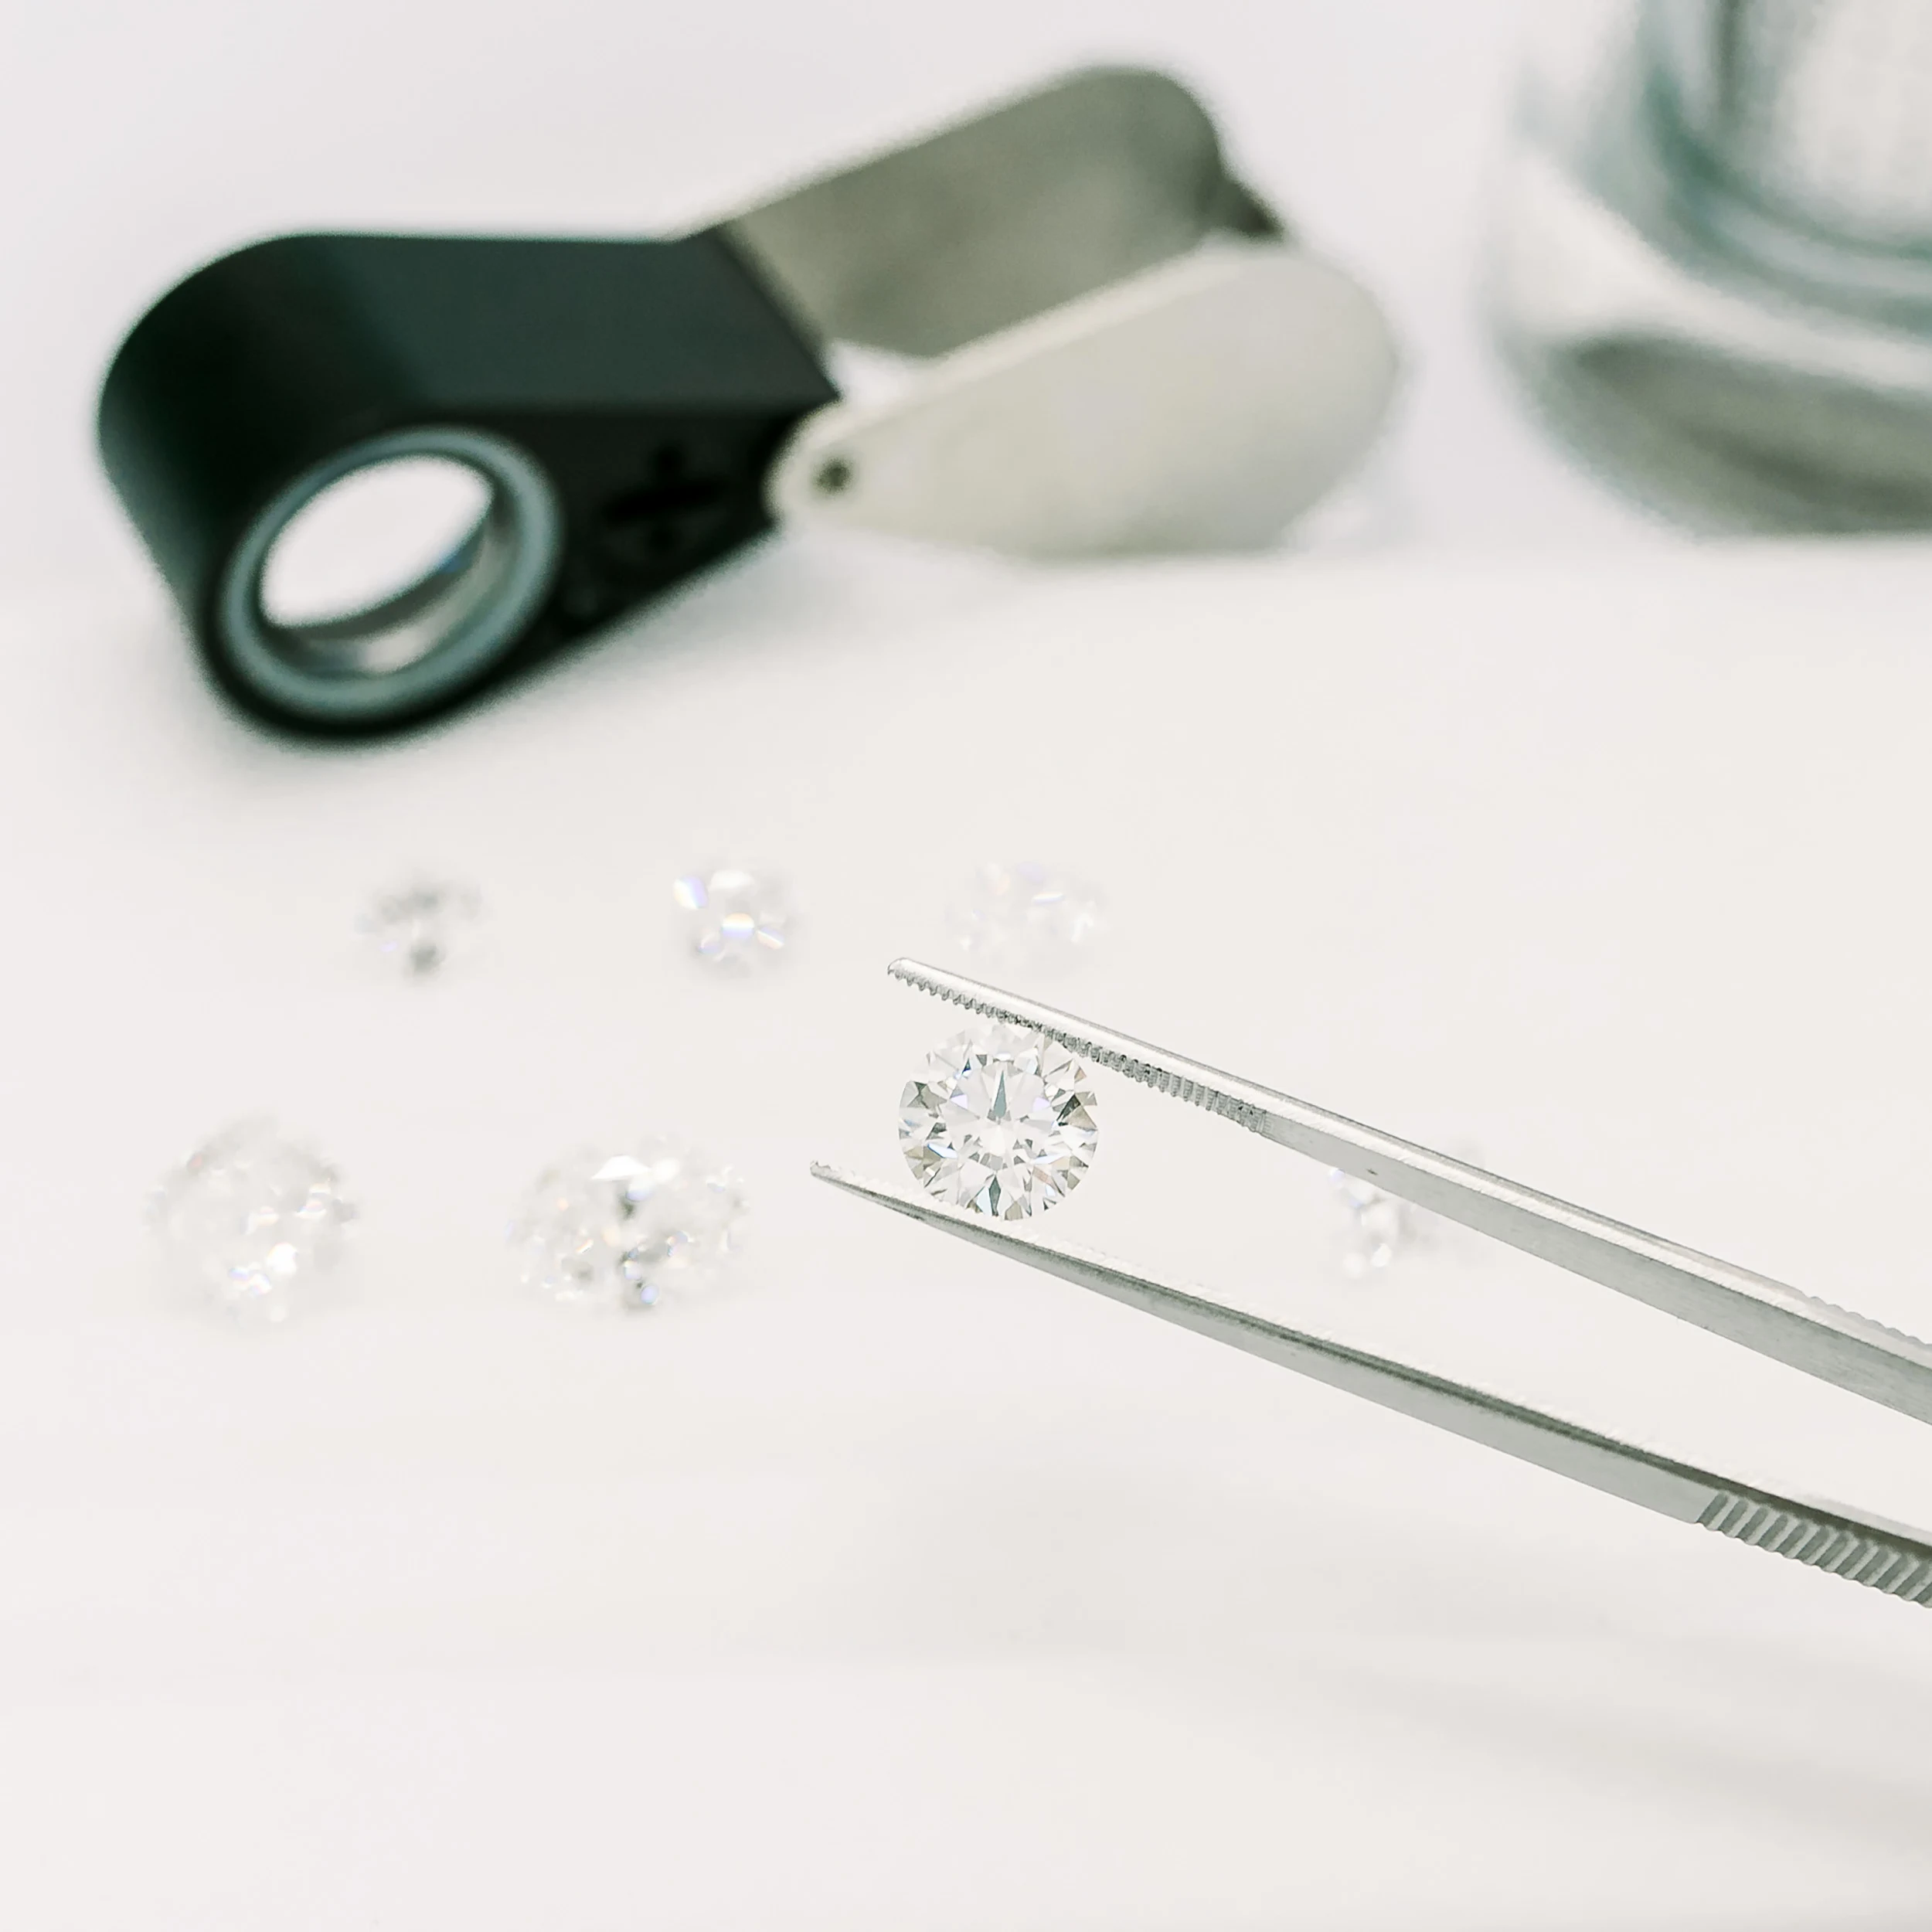 Loose lab diamonds shown in tweezers